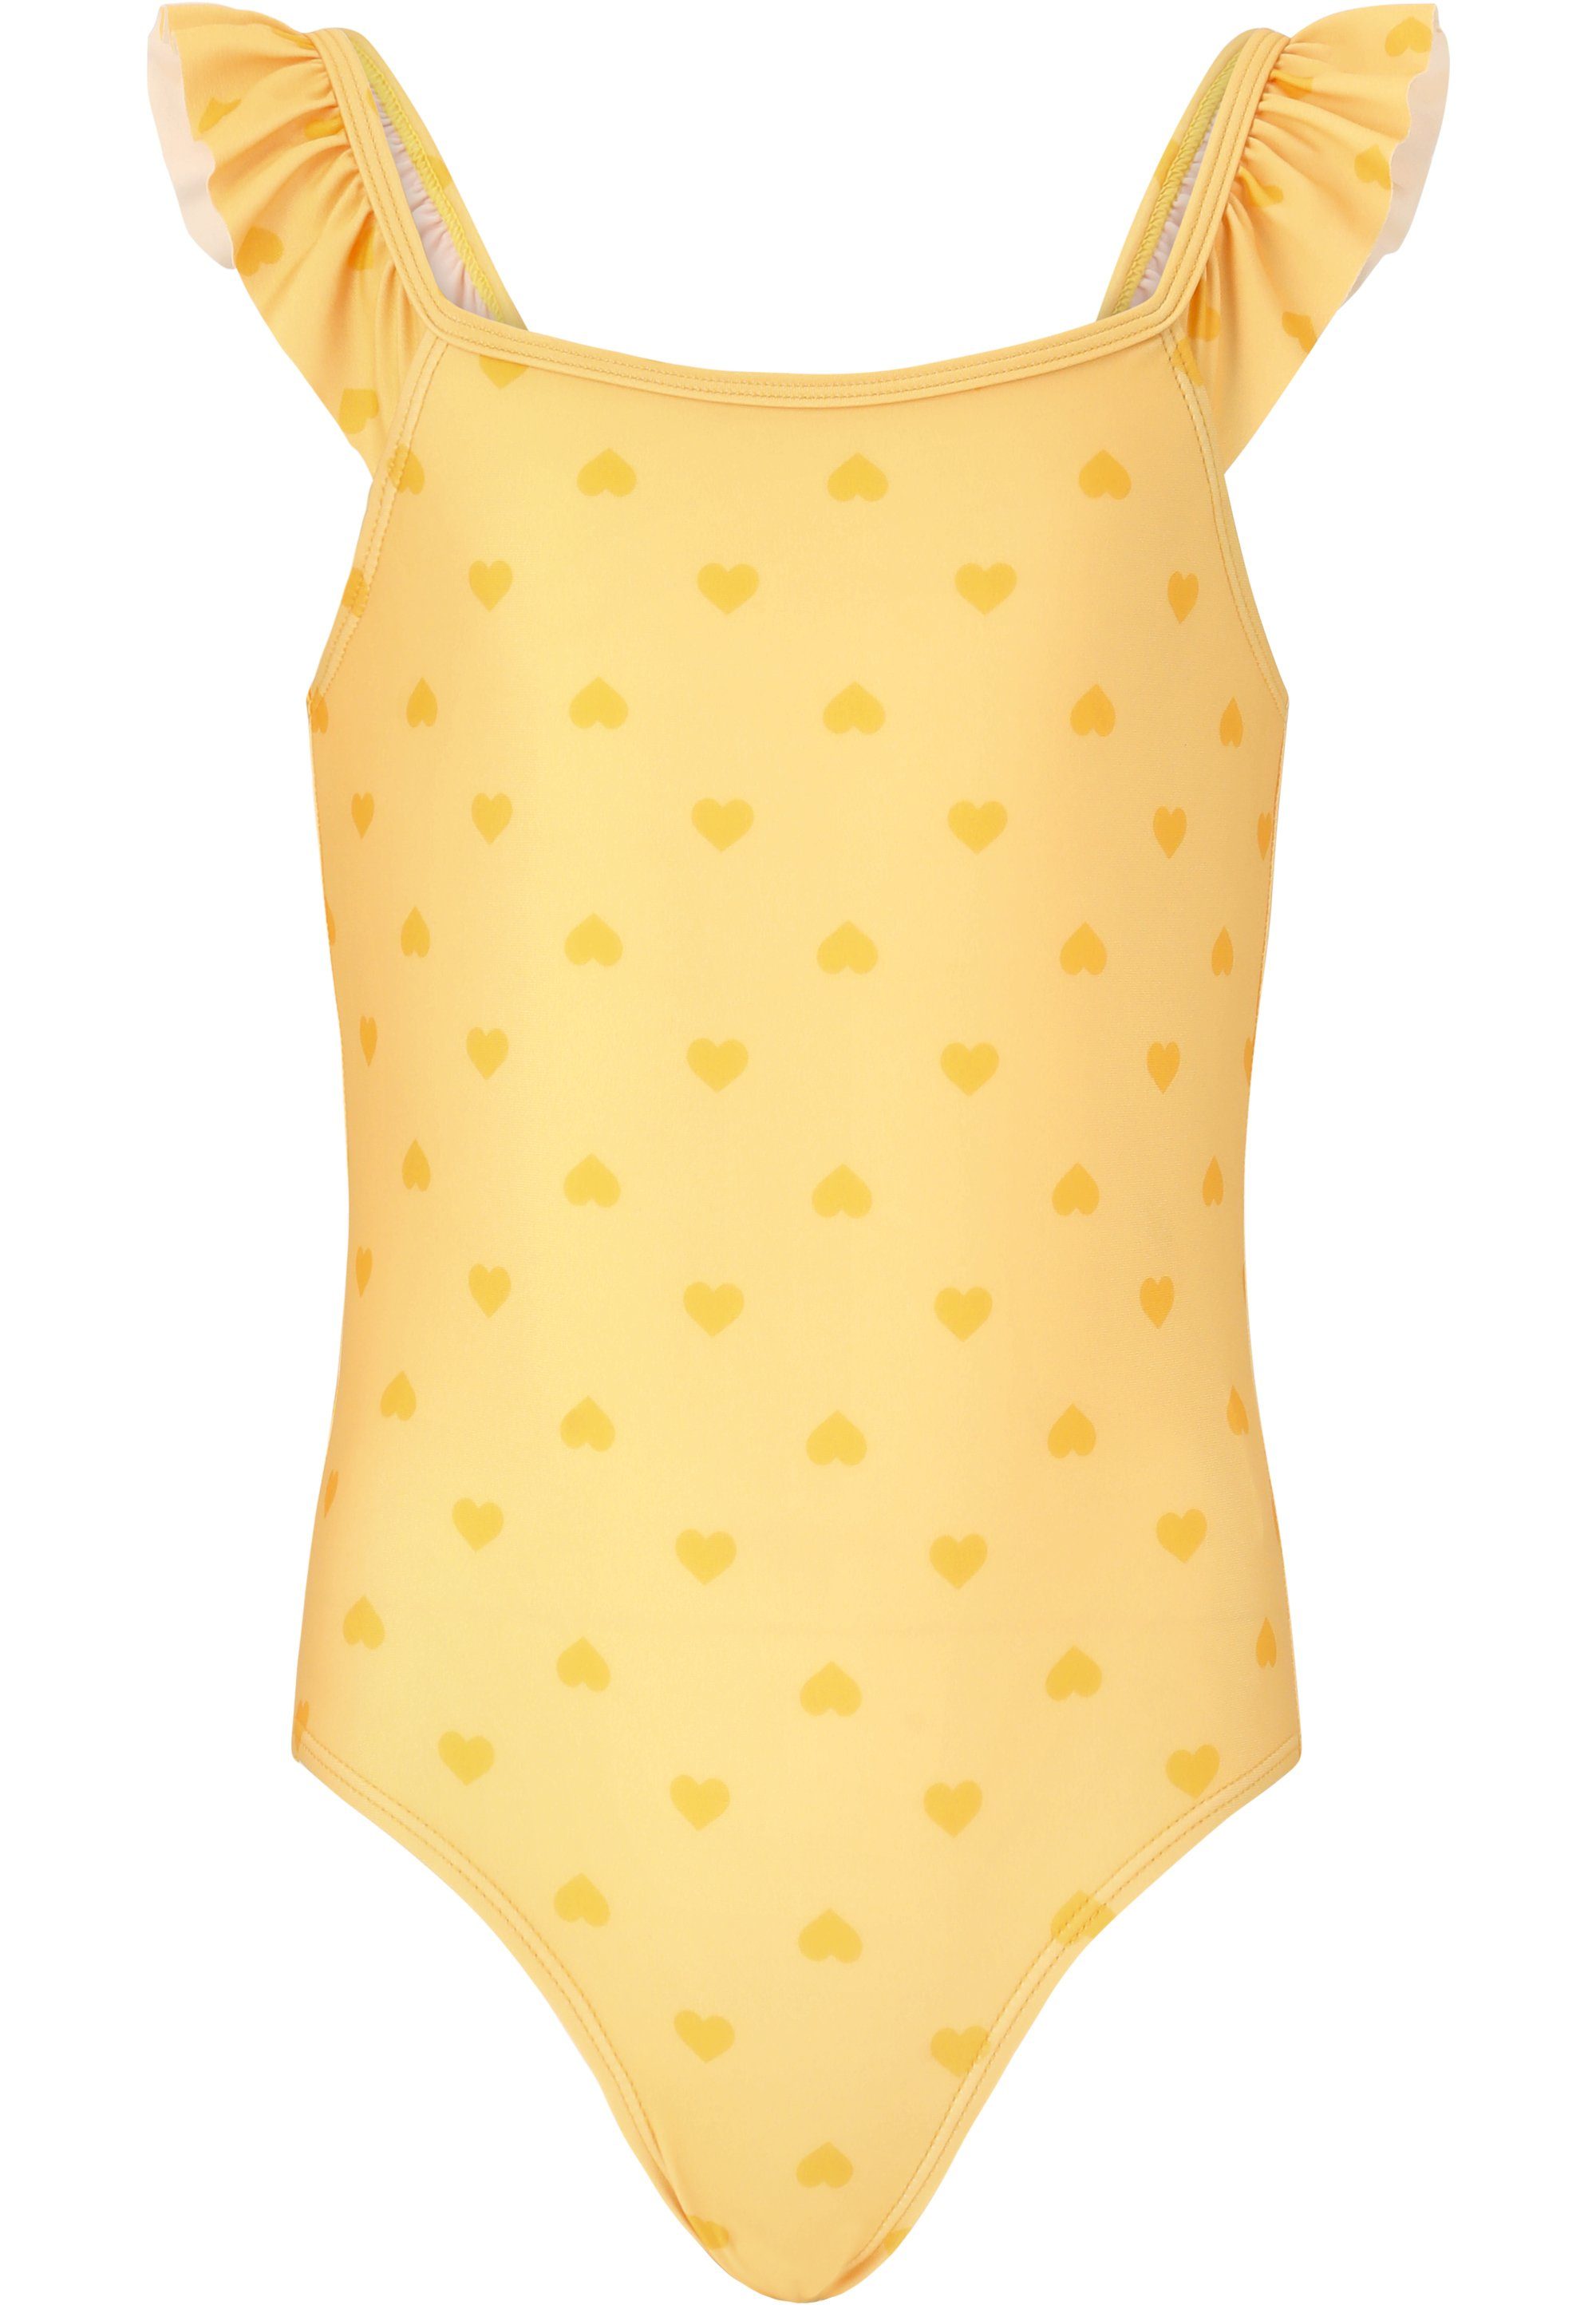 ZIGZAG Badeanzug Carly mit modischem Rüschendesign gelb